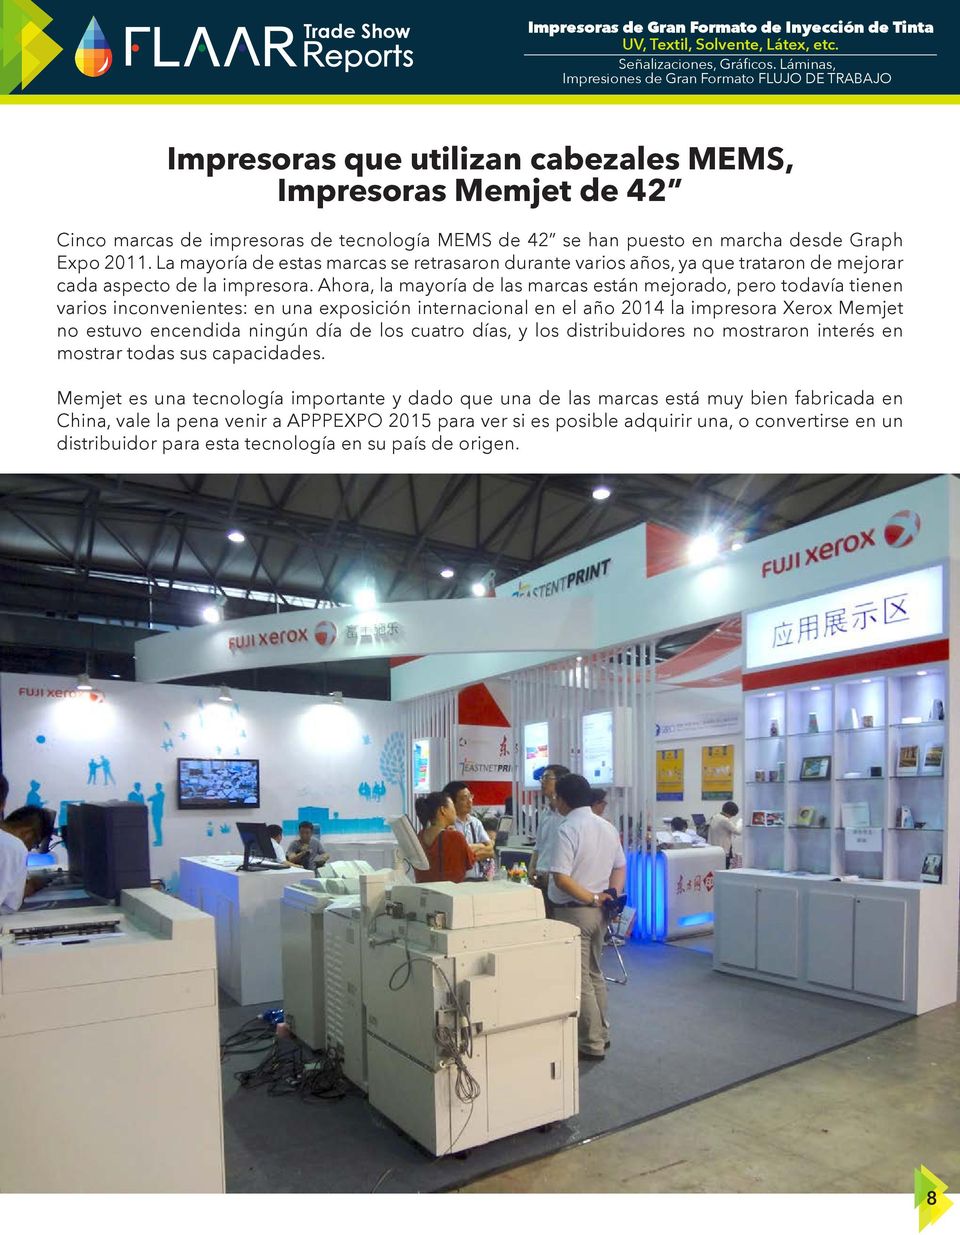 Ahora, la mayoría de las marcas están mejorado, pero todavía tienen varios inconvenientes: en una exposición internacional en el año 2014 la impresora Xerox Memjet no estuvo encendida ningún día de